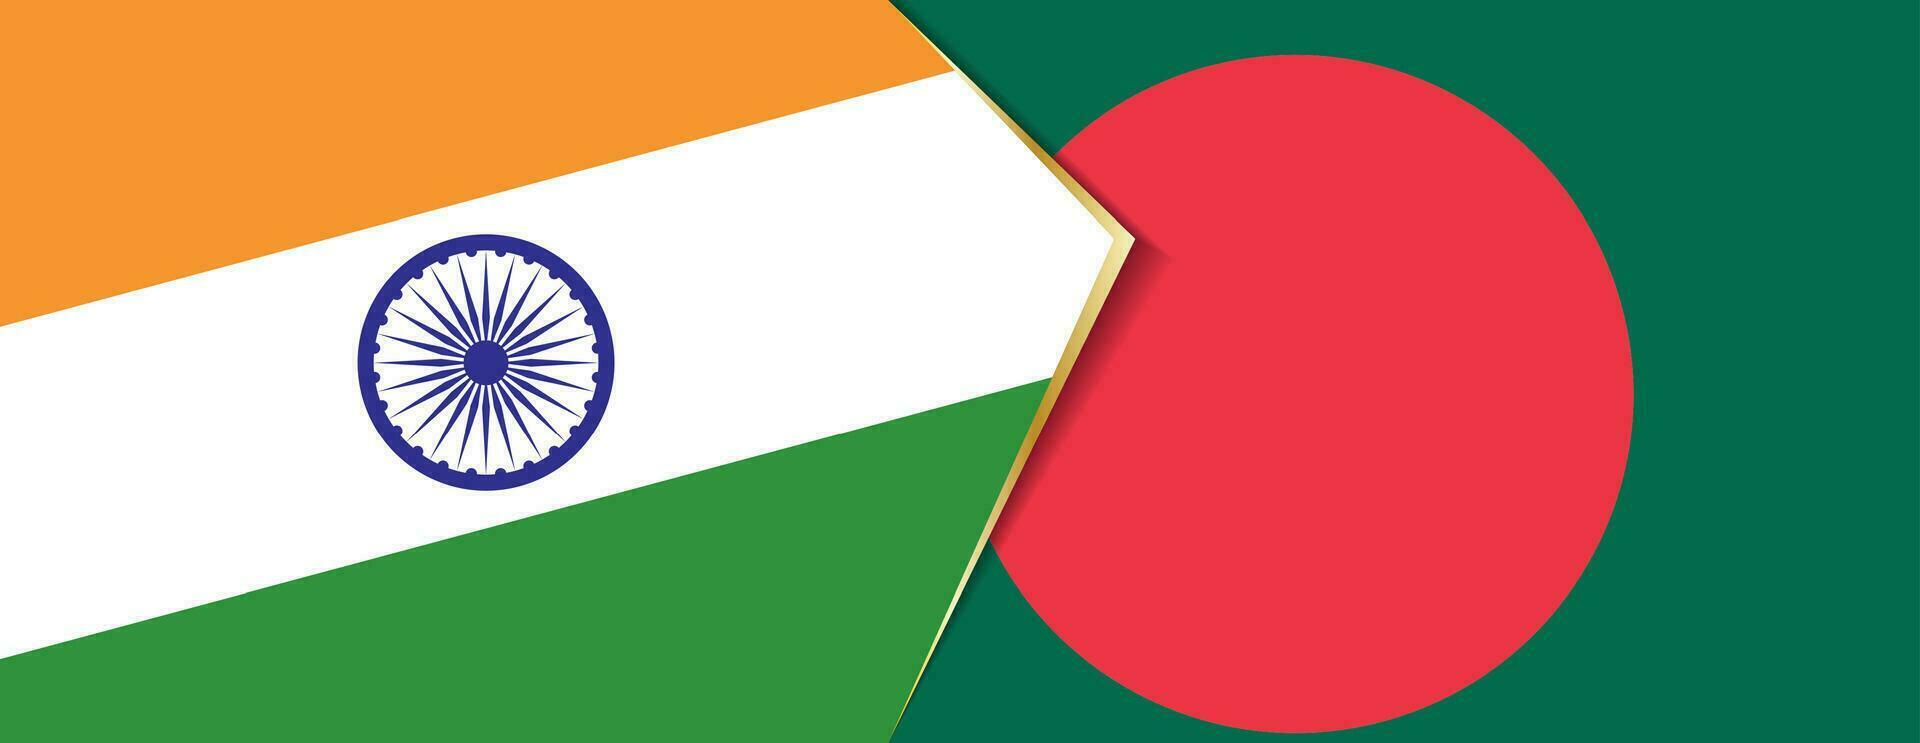 India y Bangladesh banderas, dos vector banderas